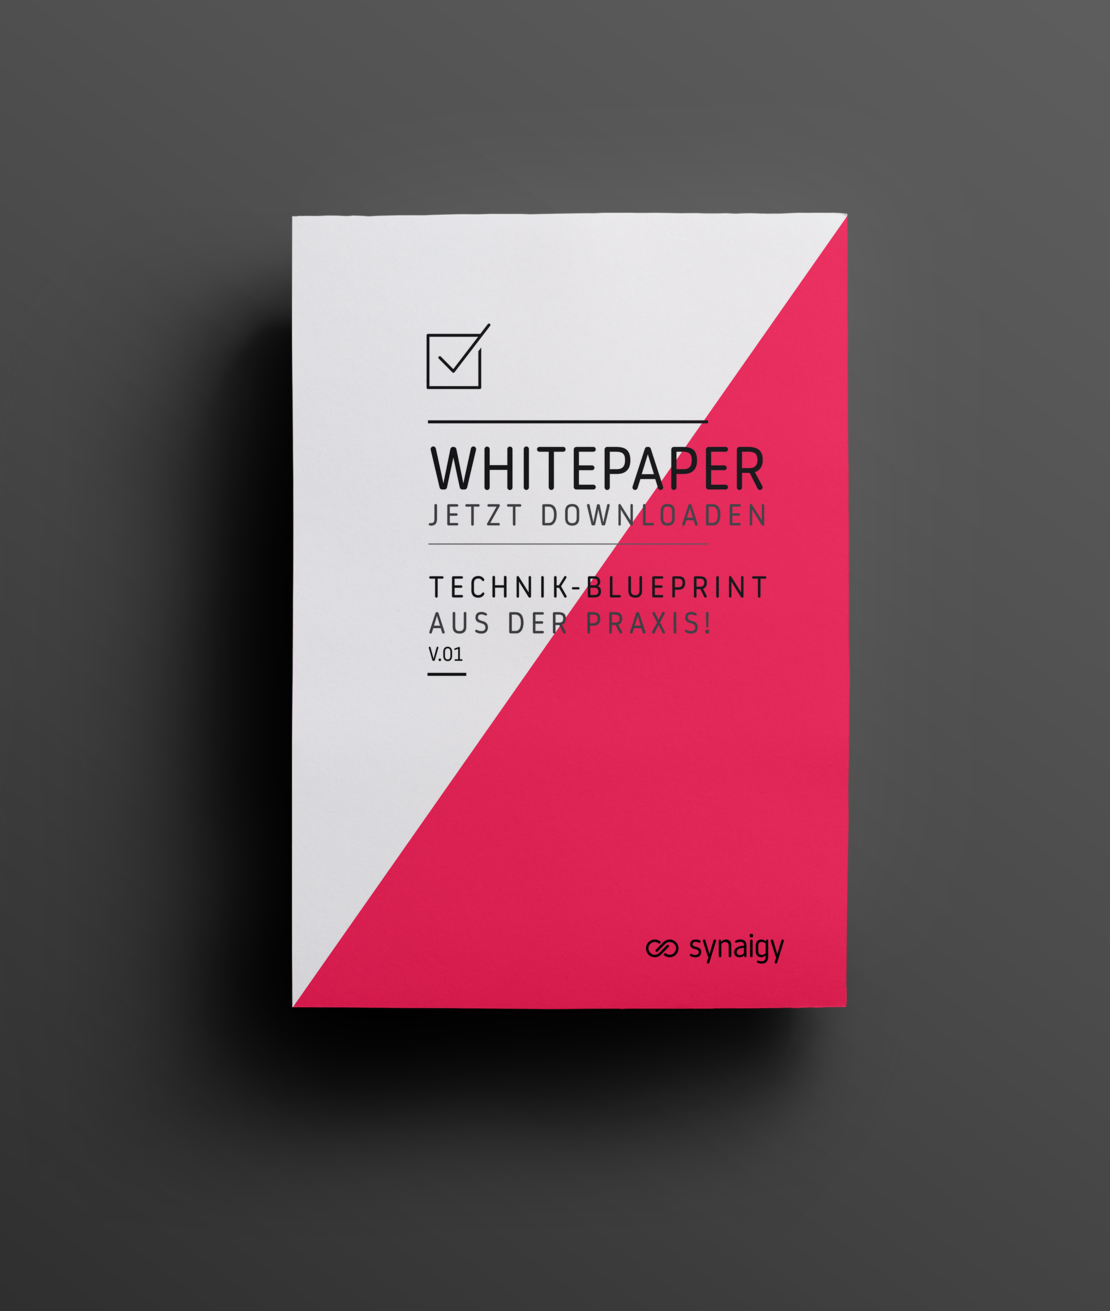 Whitepaper - Technik-Blueprint für höhere Systemeffizienz & Kosteneffizienz, Anwender-Insights, Managed Commerce - First Steps Checkliste